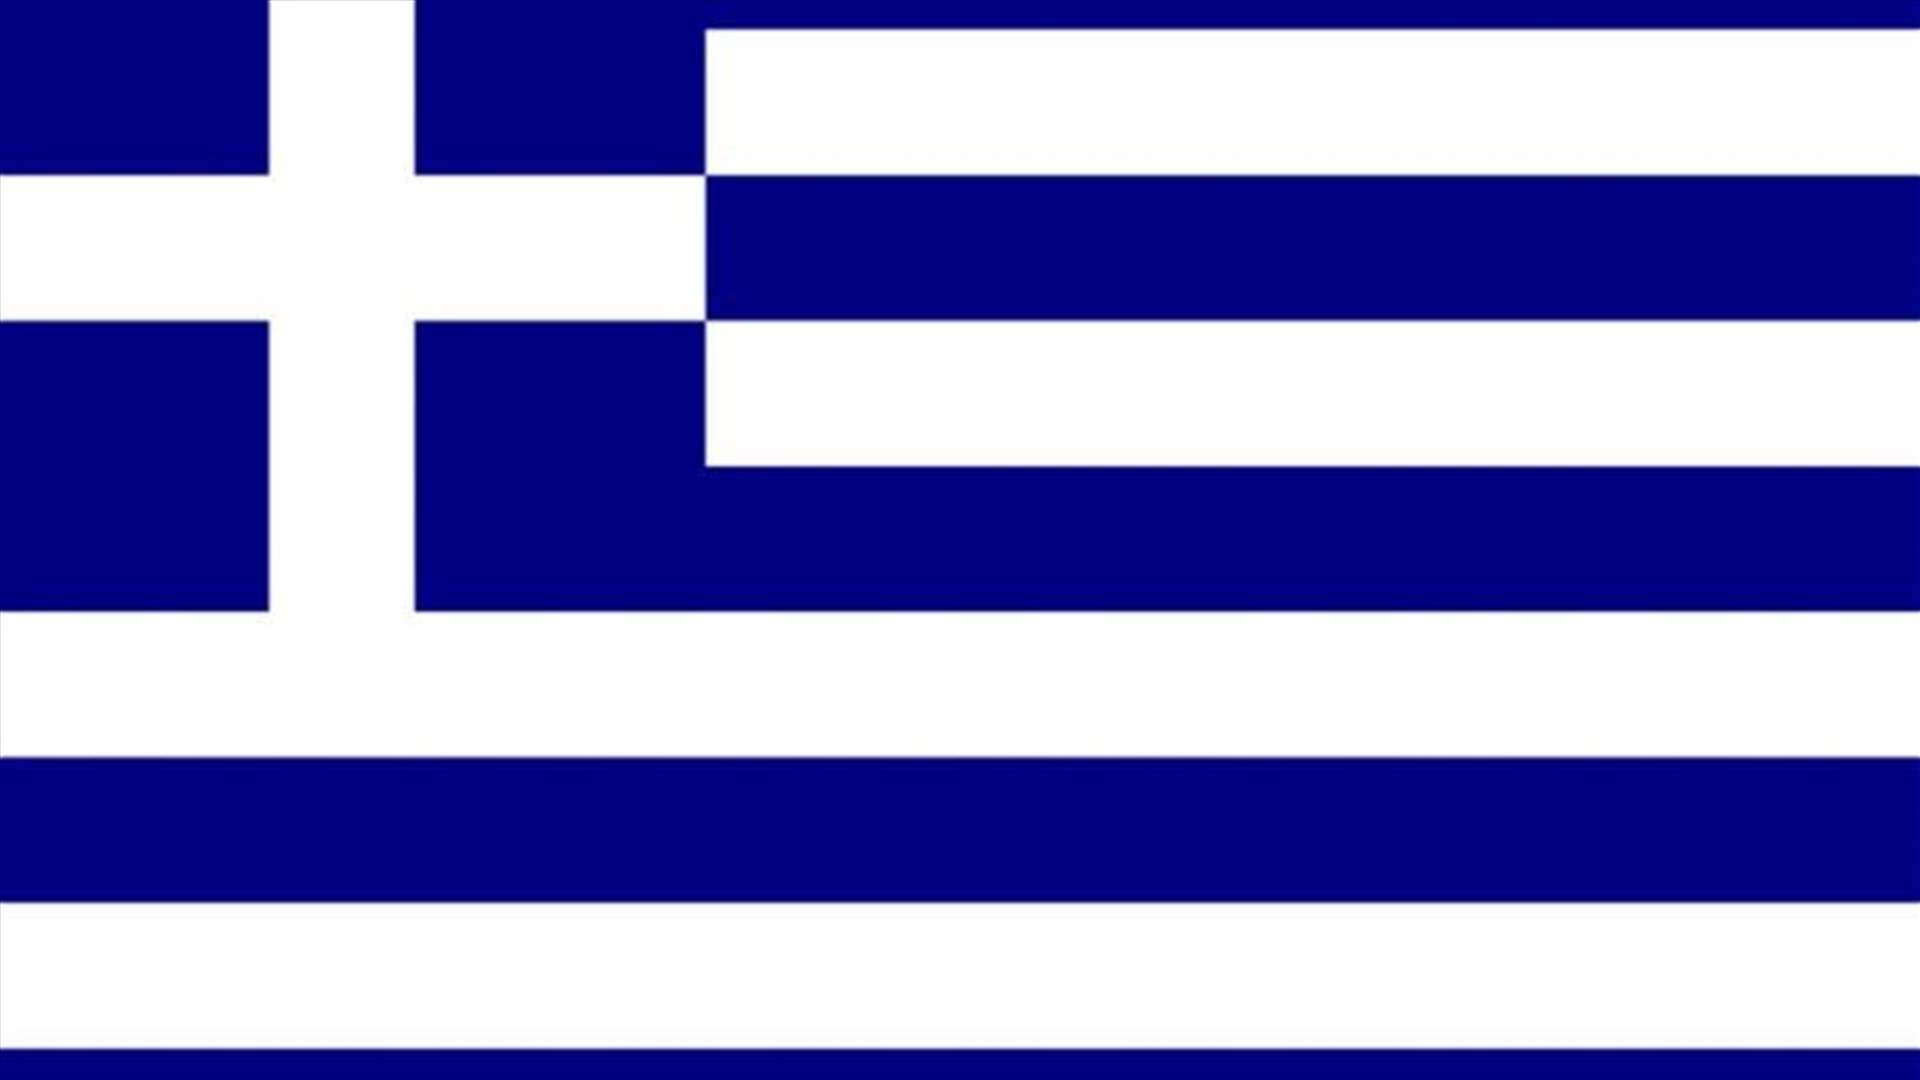 الرئيس اليوناني يوقع مرسوم تحديد موعد الانتخابات التشريعية